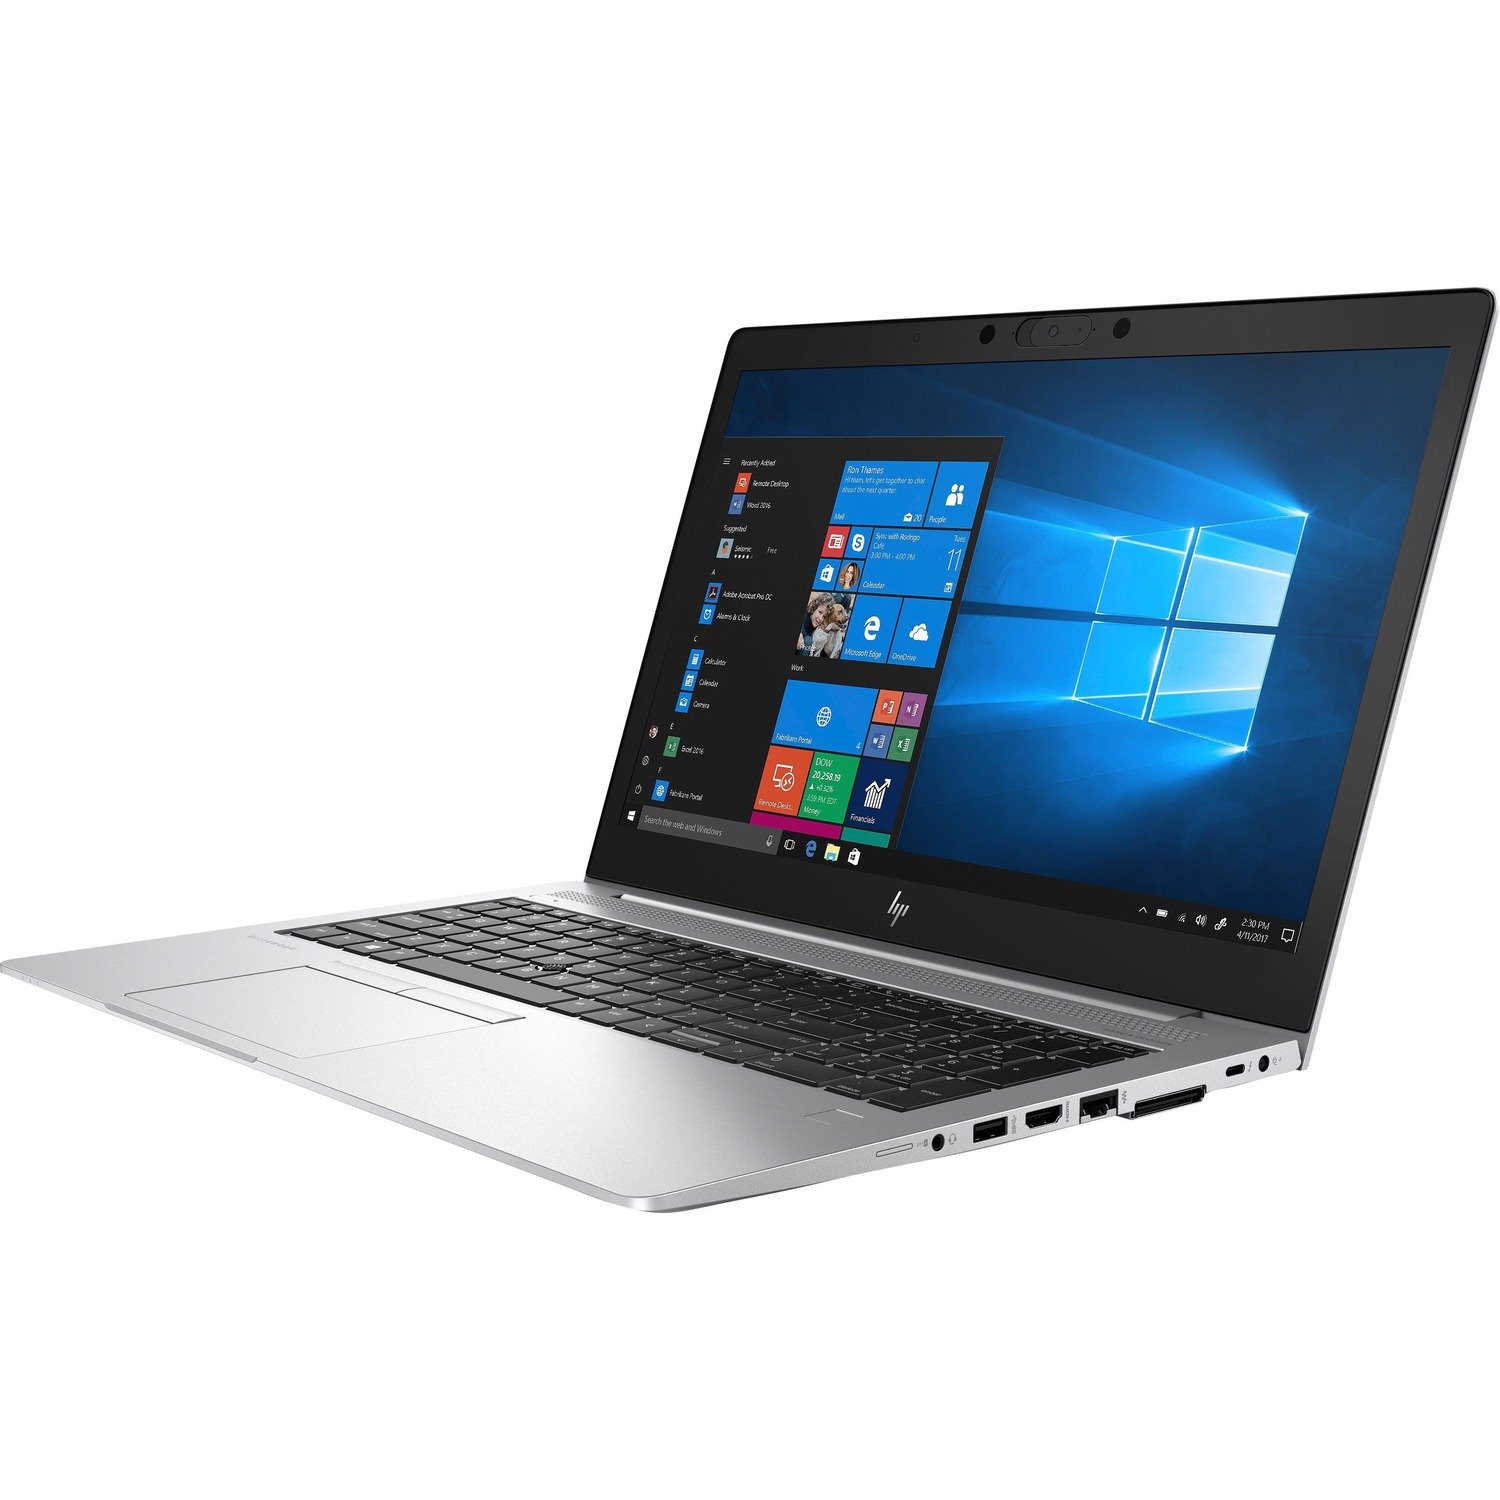 HP EliteBook 850 G6 39.6 cm (15.6") Notebook - 1920 x 1080 - Intel Core i7 8th Gen i7-8565U Quad-core (4 Core) 1.80 GHz - 8 GB Total RAM - 256 GB SSD